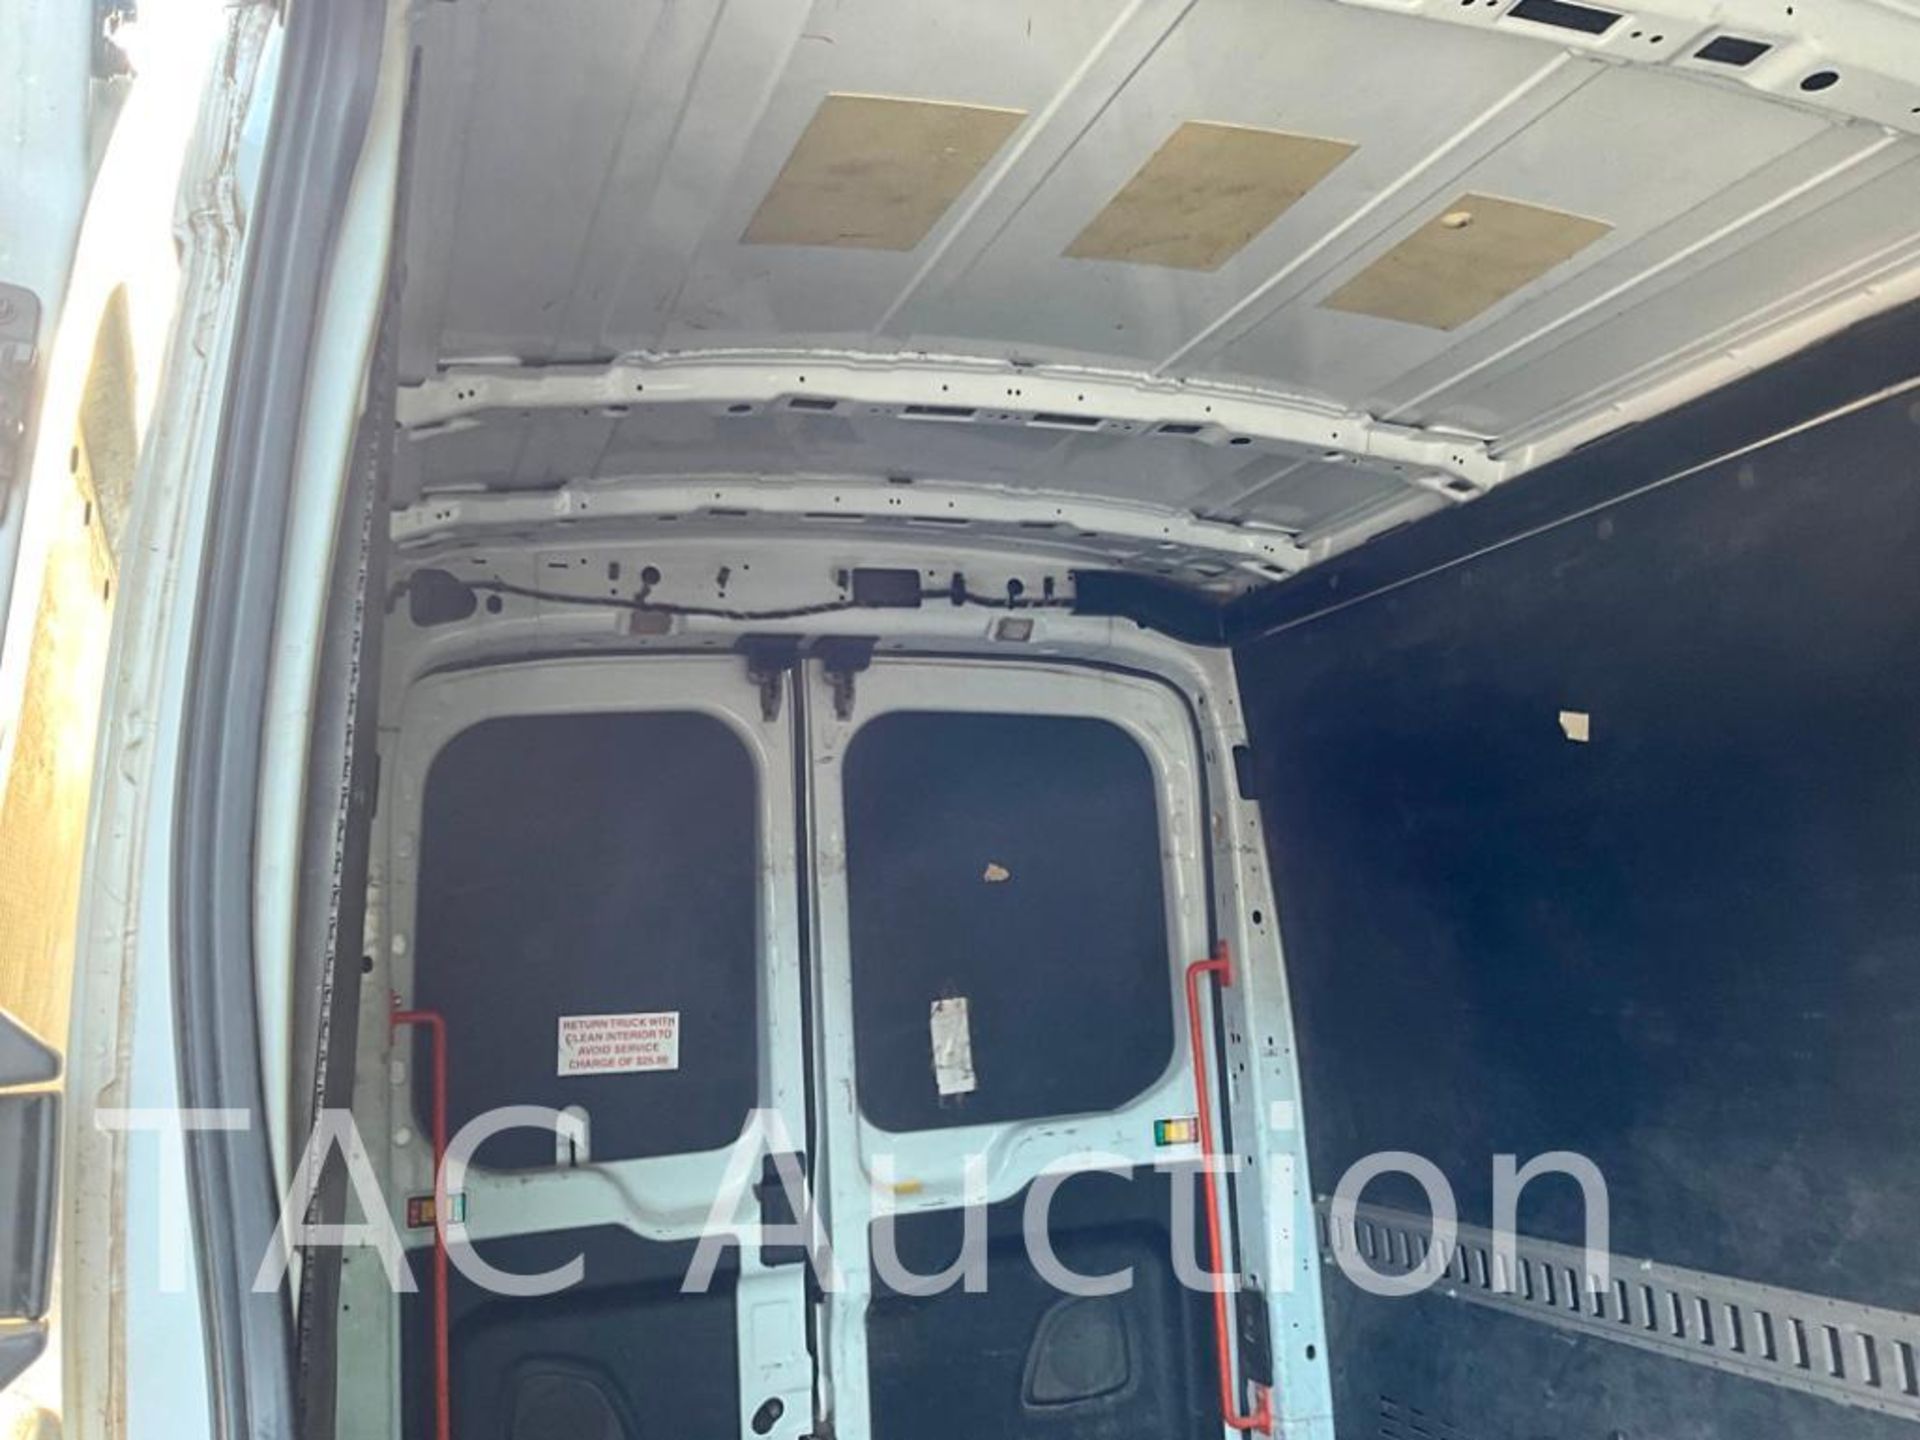 2019 Ford Transit 150 Cargo Van - Image 32 of 46